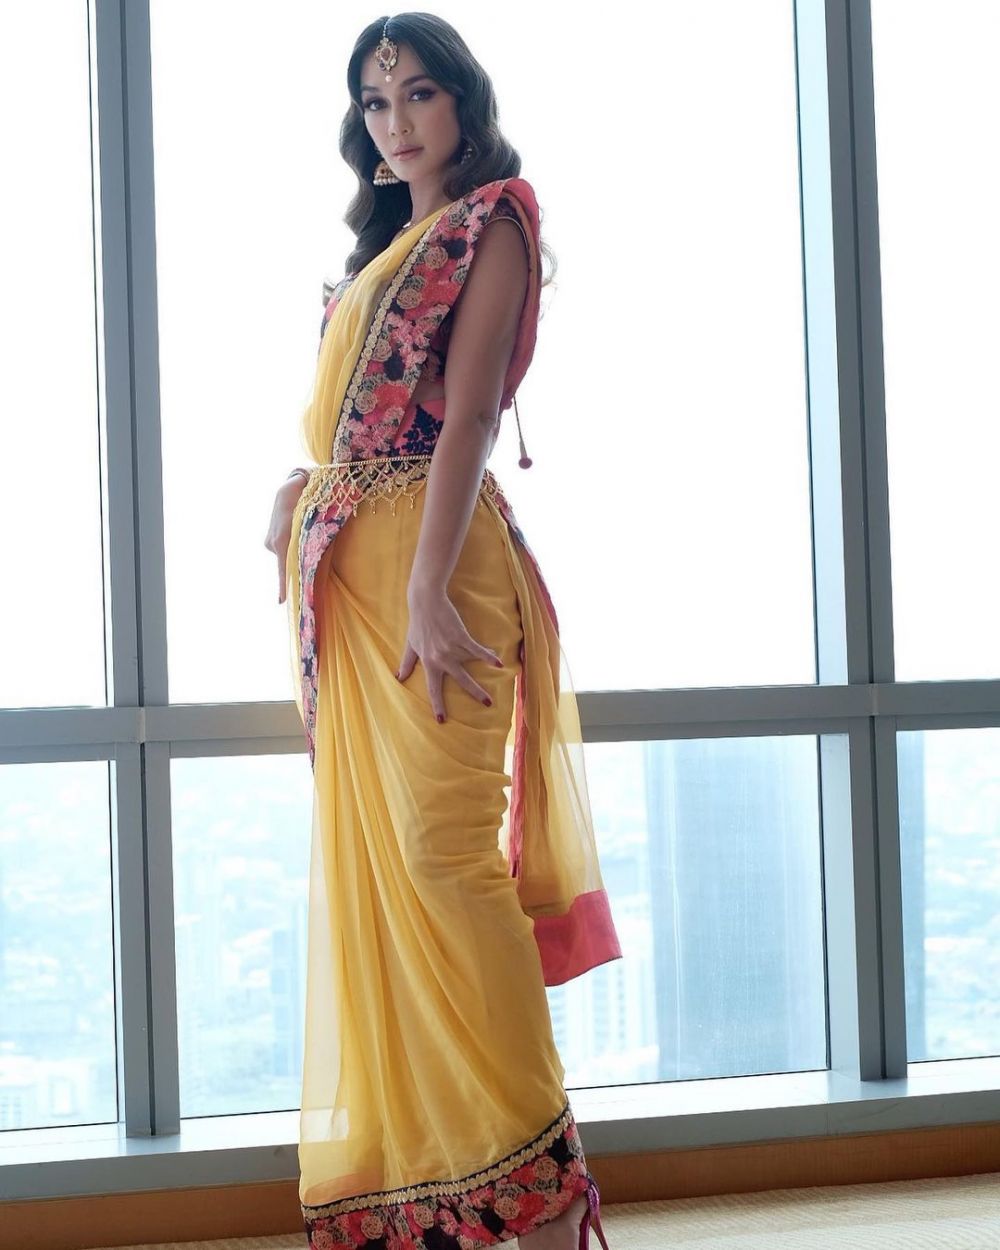 Gaya 11 seleb kondangan kenakan baju India ini bak artis Bollywood